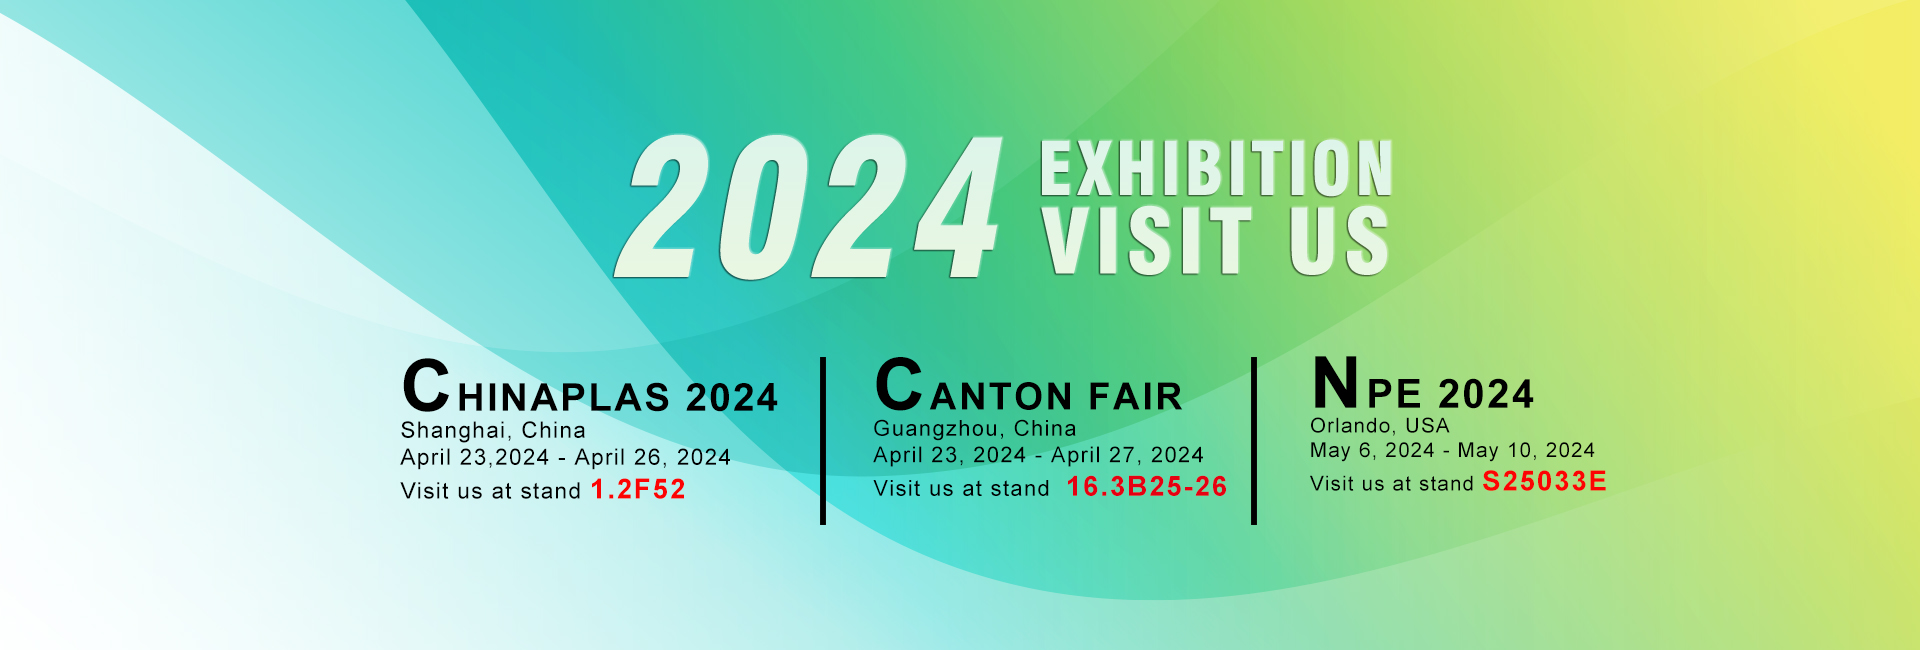 Exhibition 2024